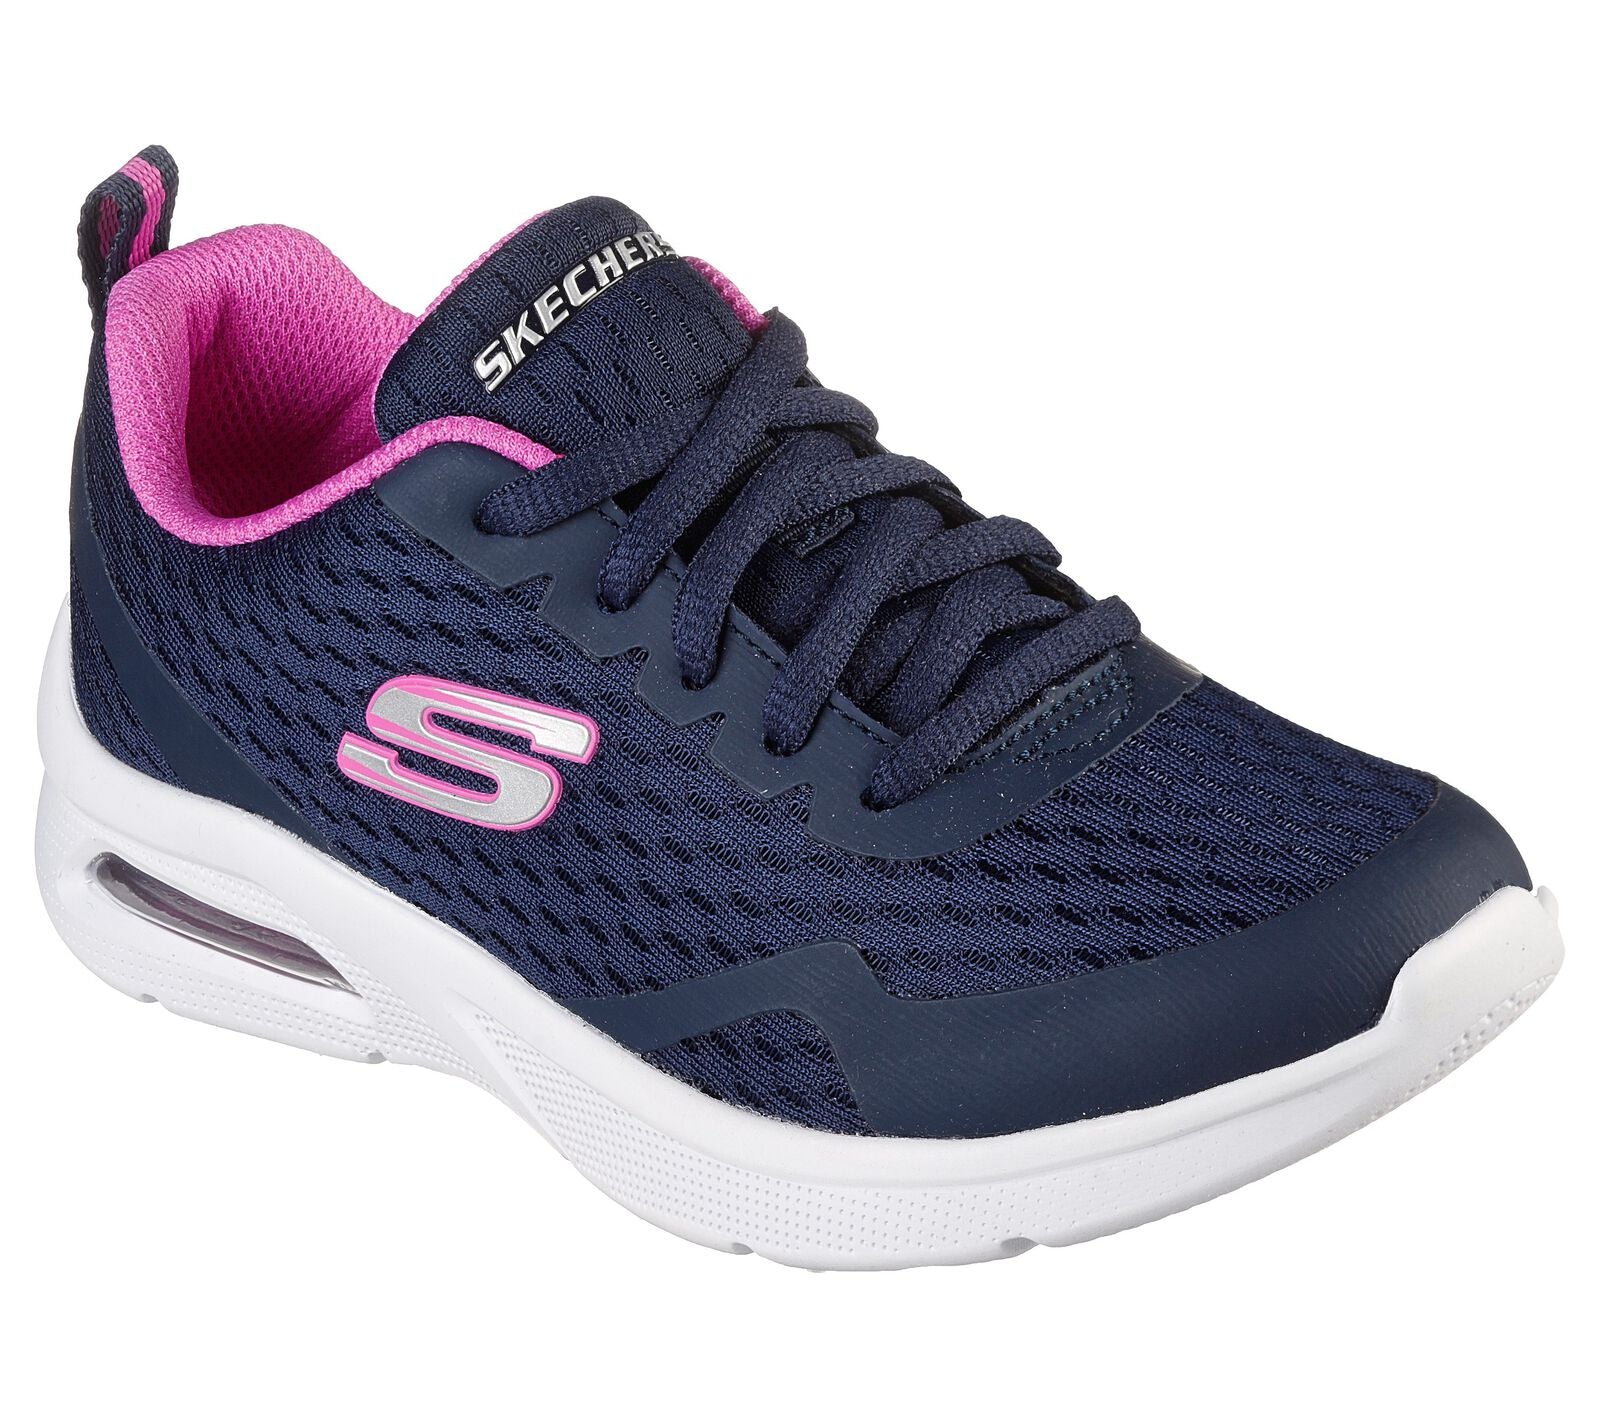 Skechers Electric jumps - Kirbys Footwear Ltd